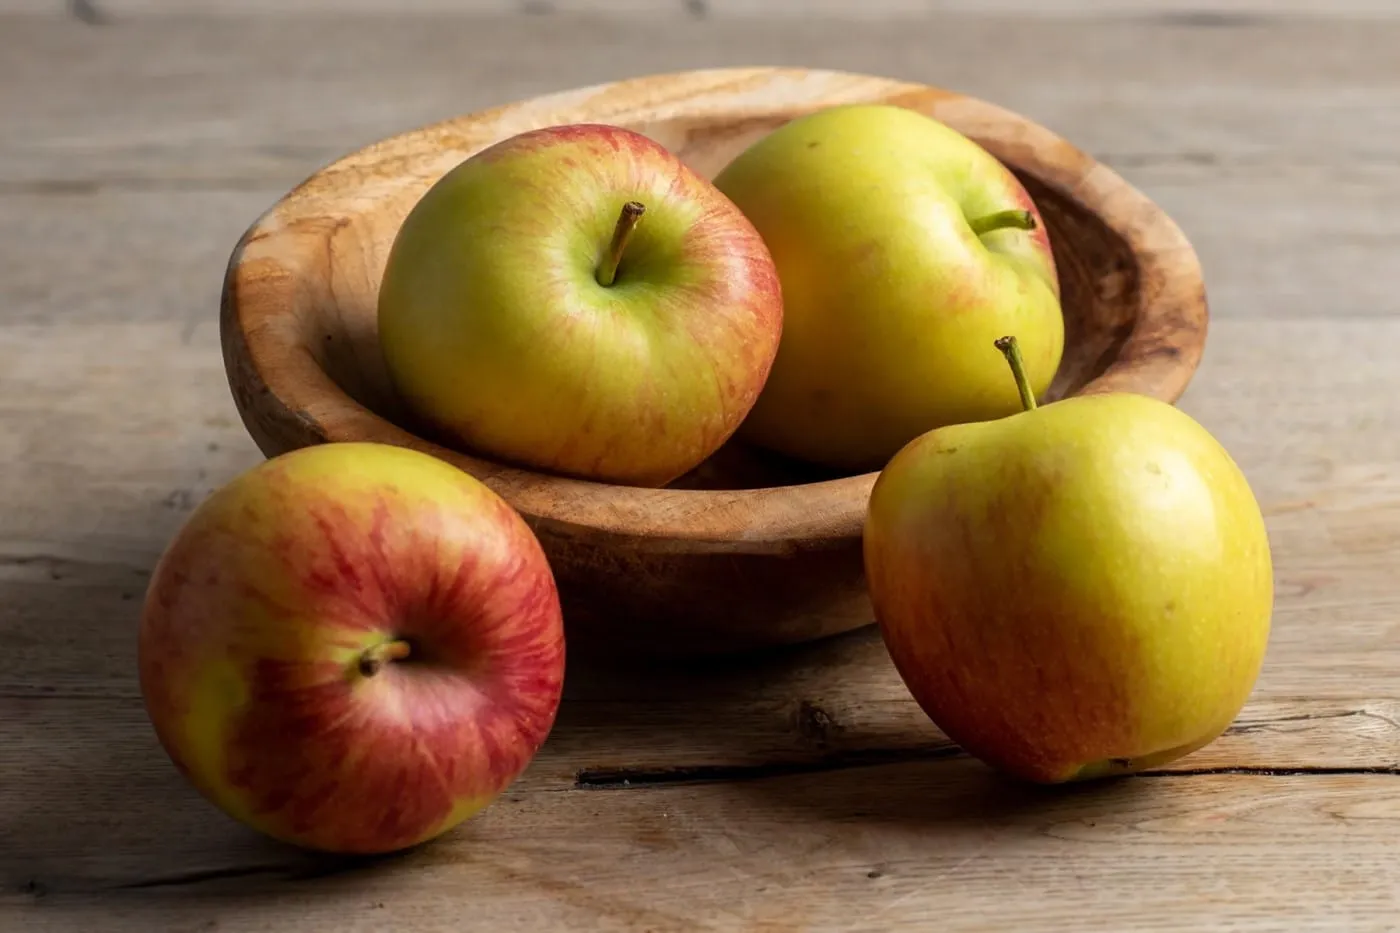 đau dạ dày nên ăn táo không